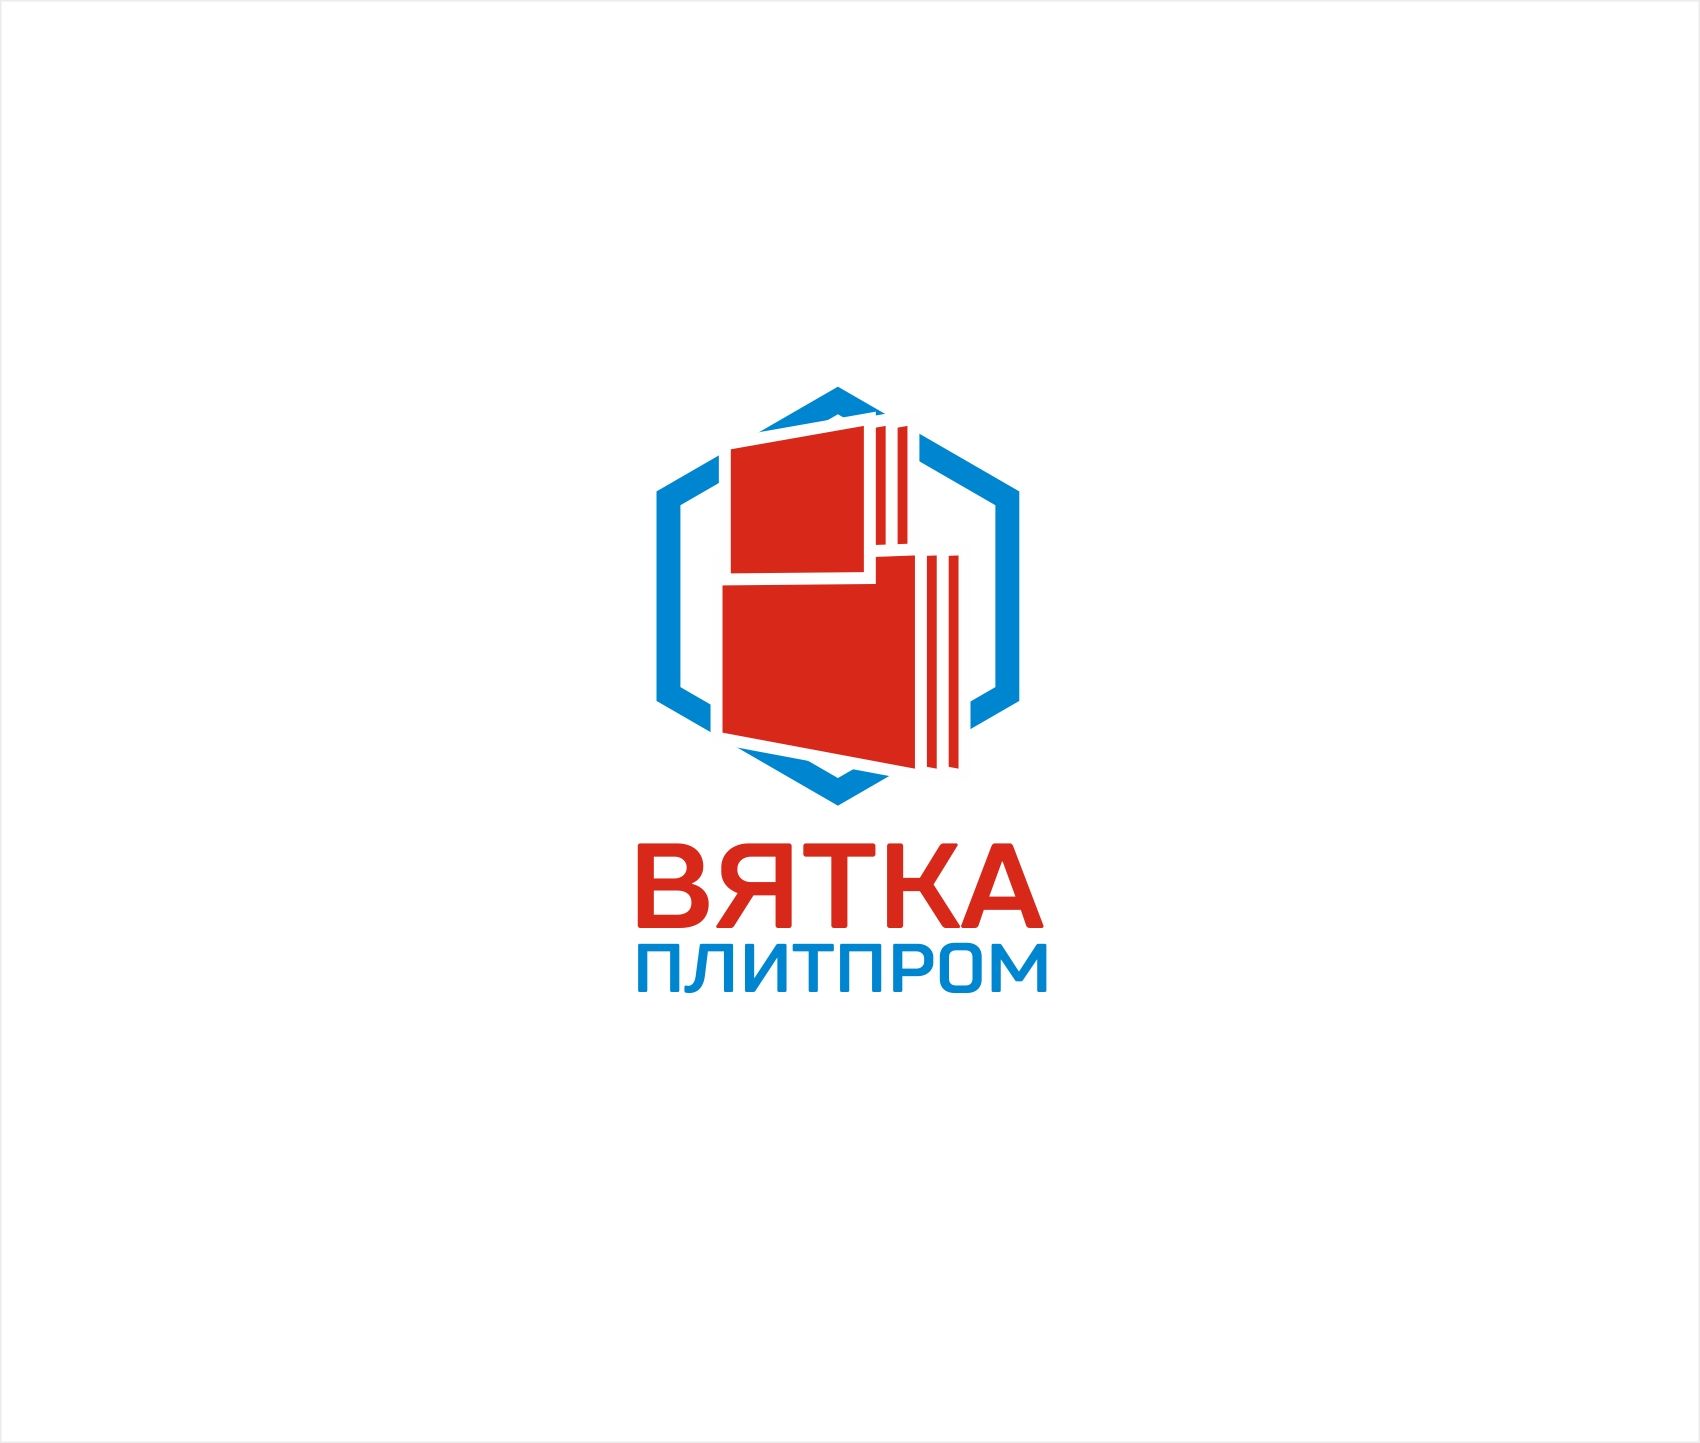 Логотип для Вяткаплитпром - дизайнер kras-sky